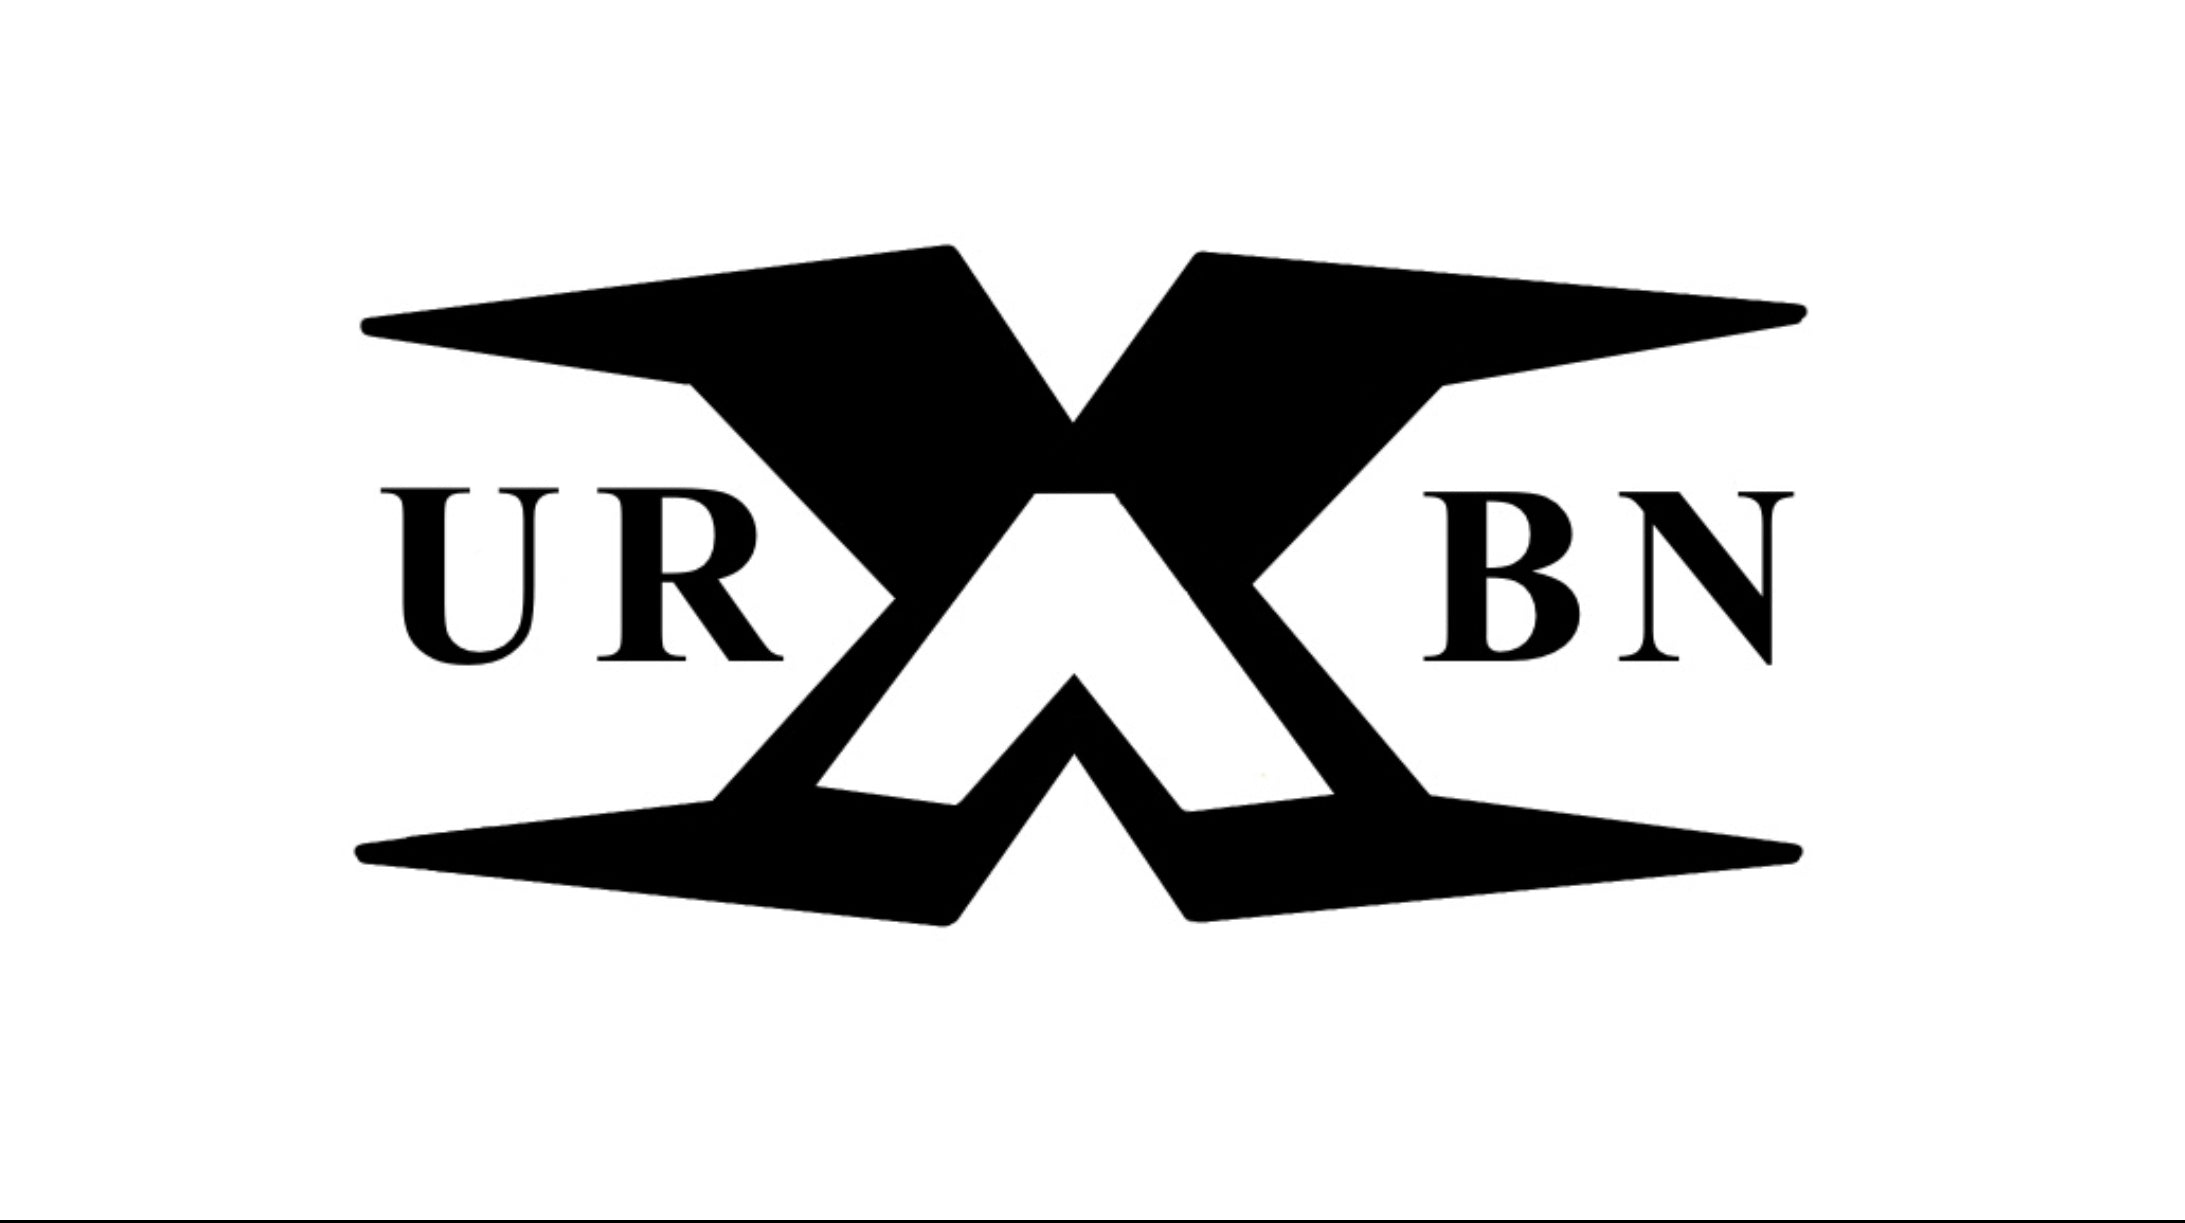 URBN AX